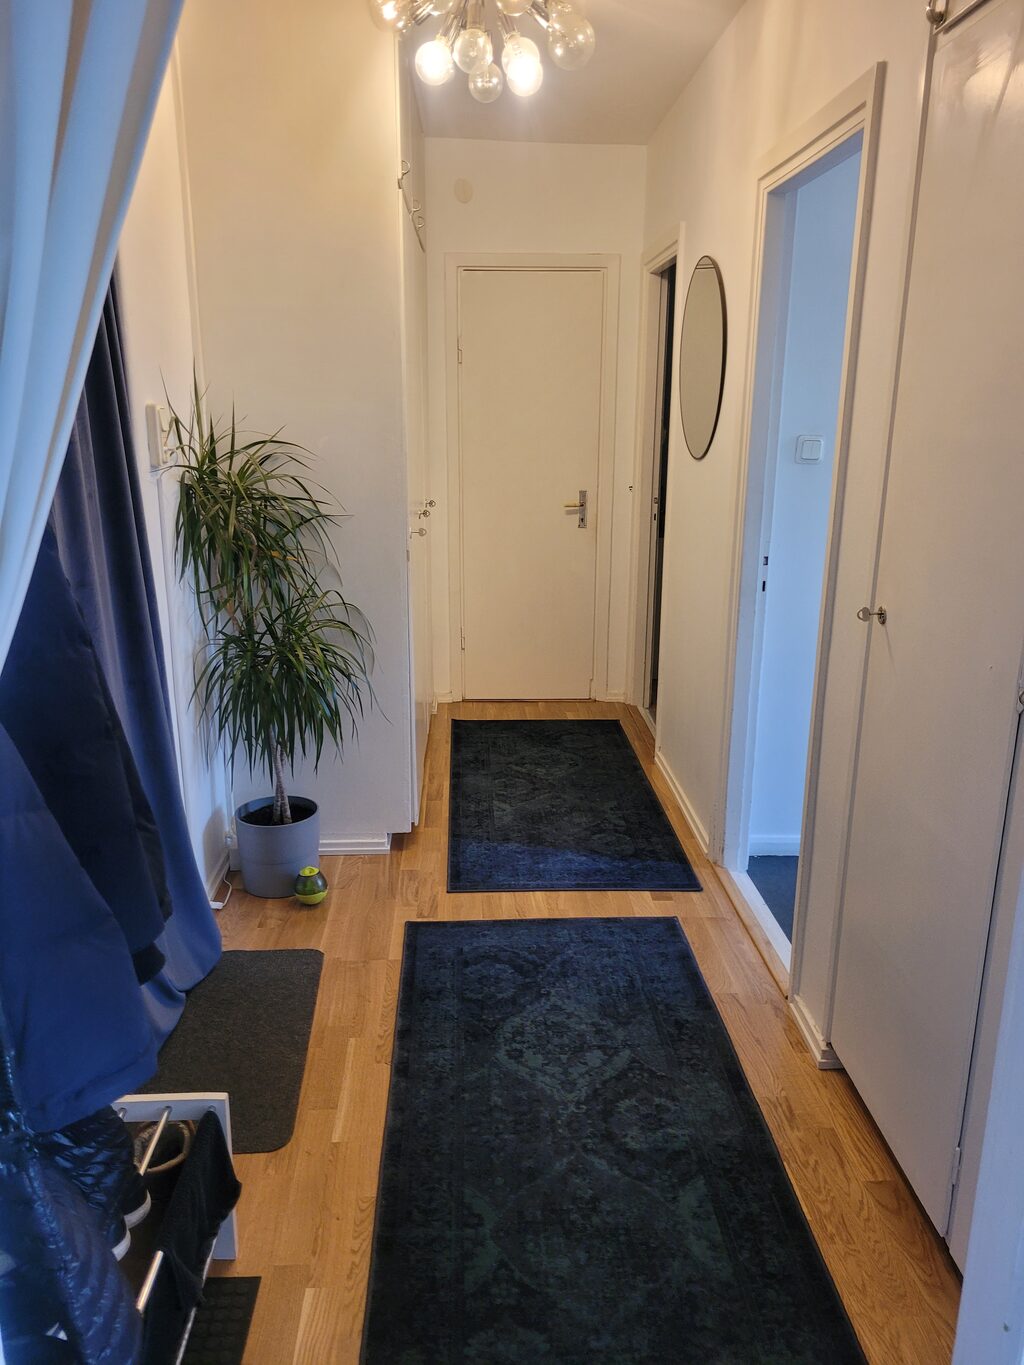 Lägenhetsbyte - Lövdalsvägen 1B, 132 41 Saltsjö-boo